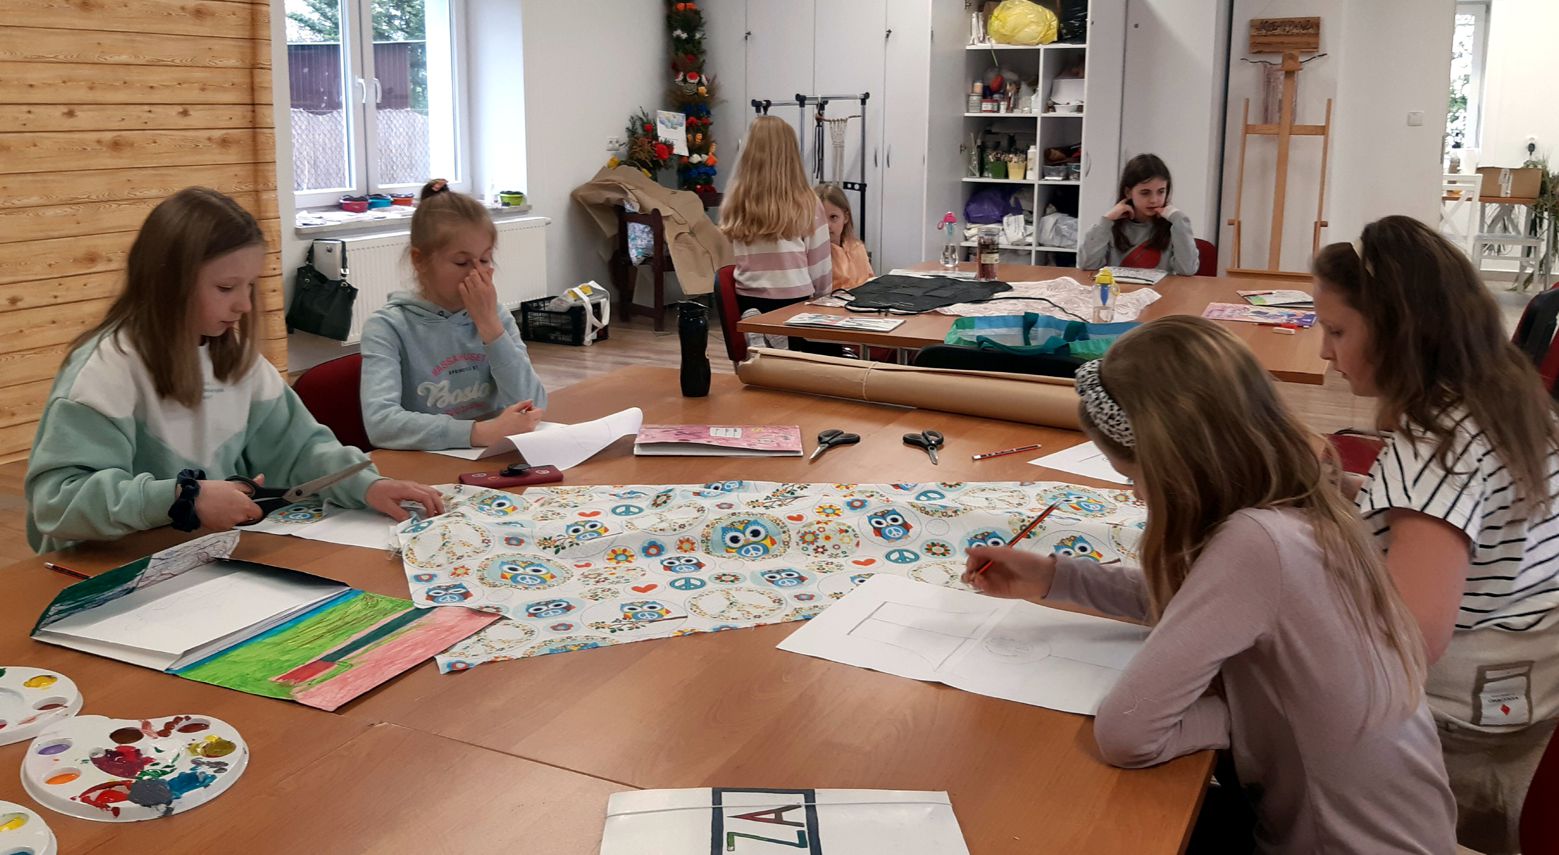 grupa dziewcząt przy dużym stole projektuje na kartkach